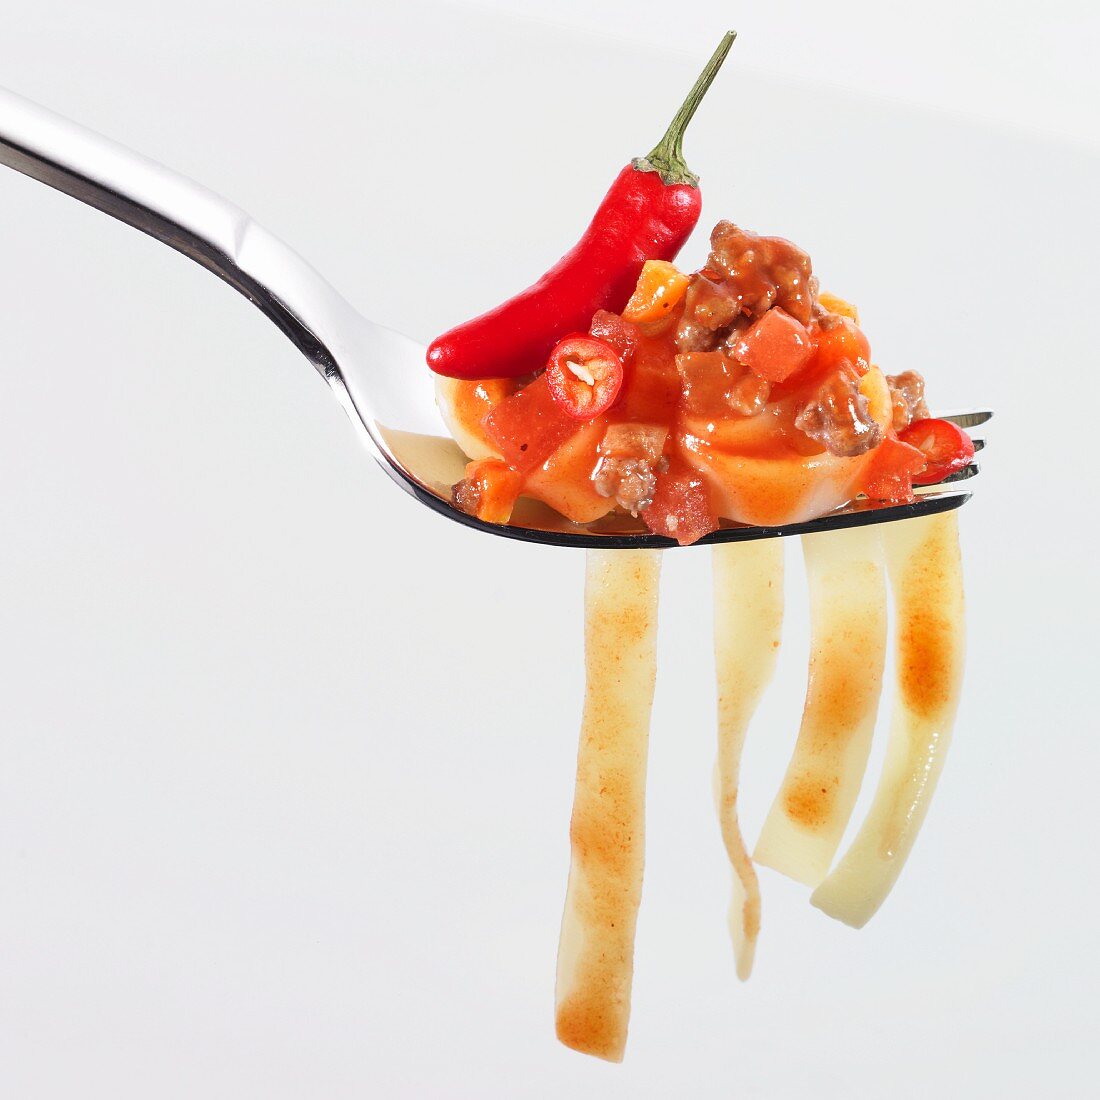 Gabel mit Bandnudeln, scharfer Tomaten-Hackfleisch-Sauce und Piri-Piri-Schote